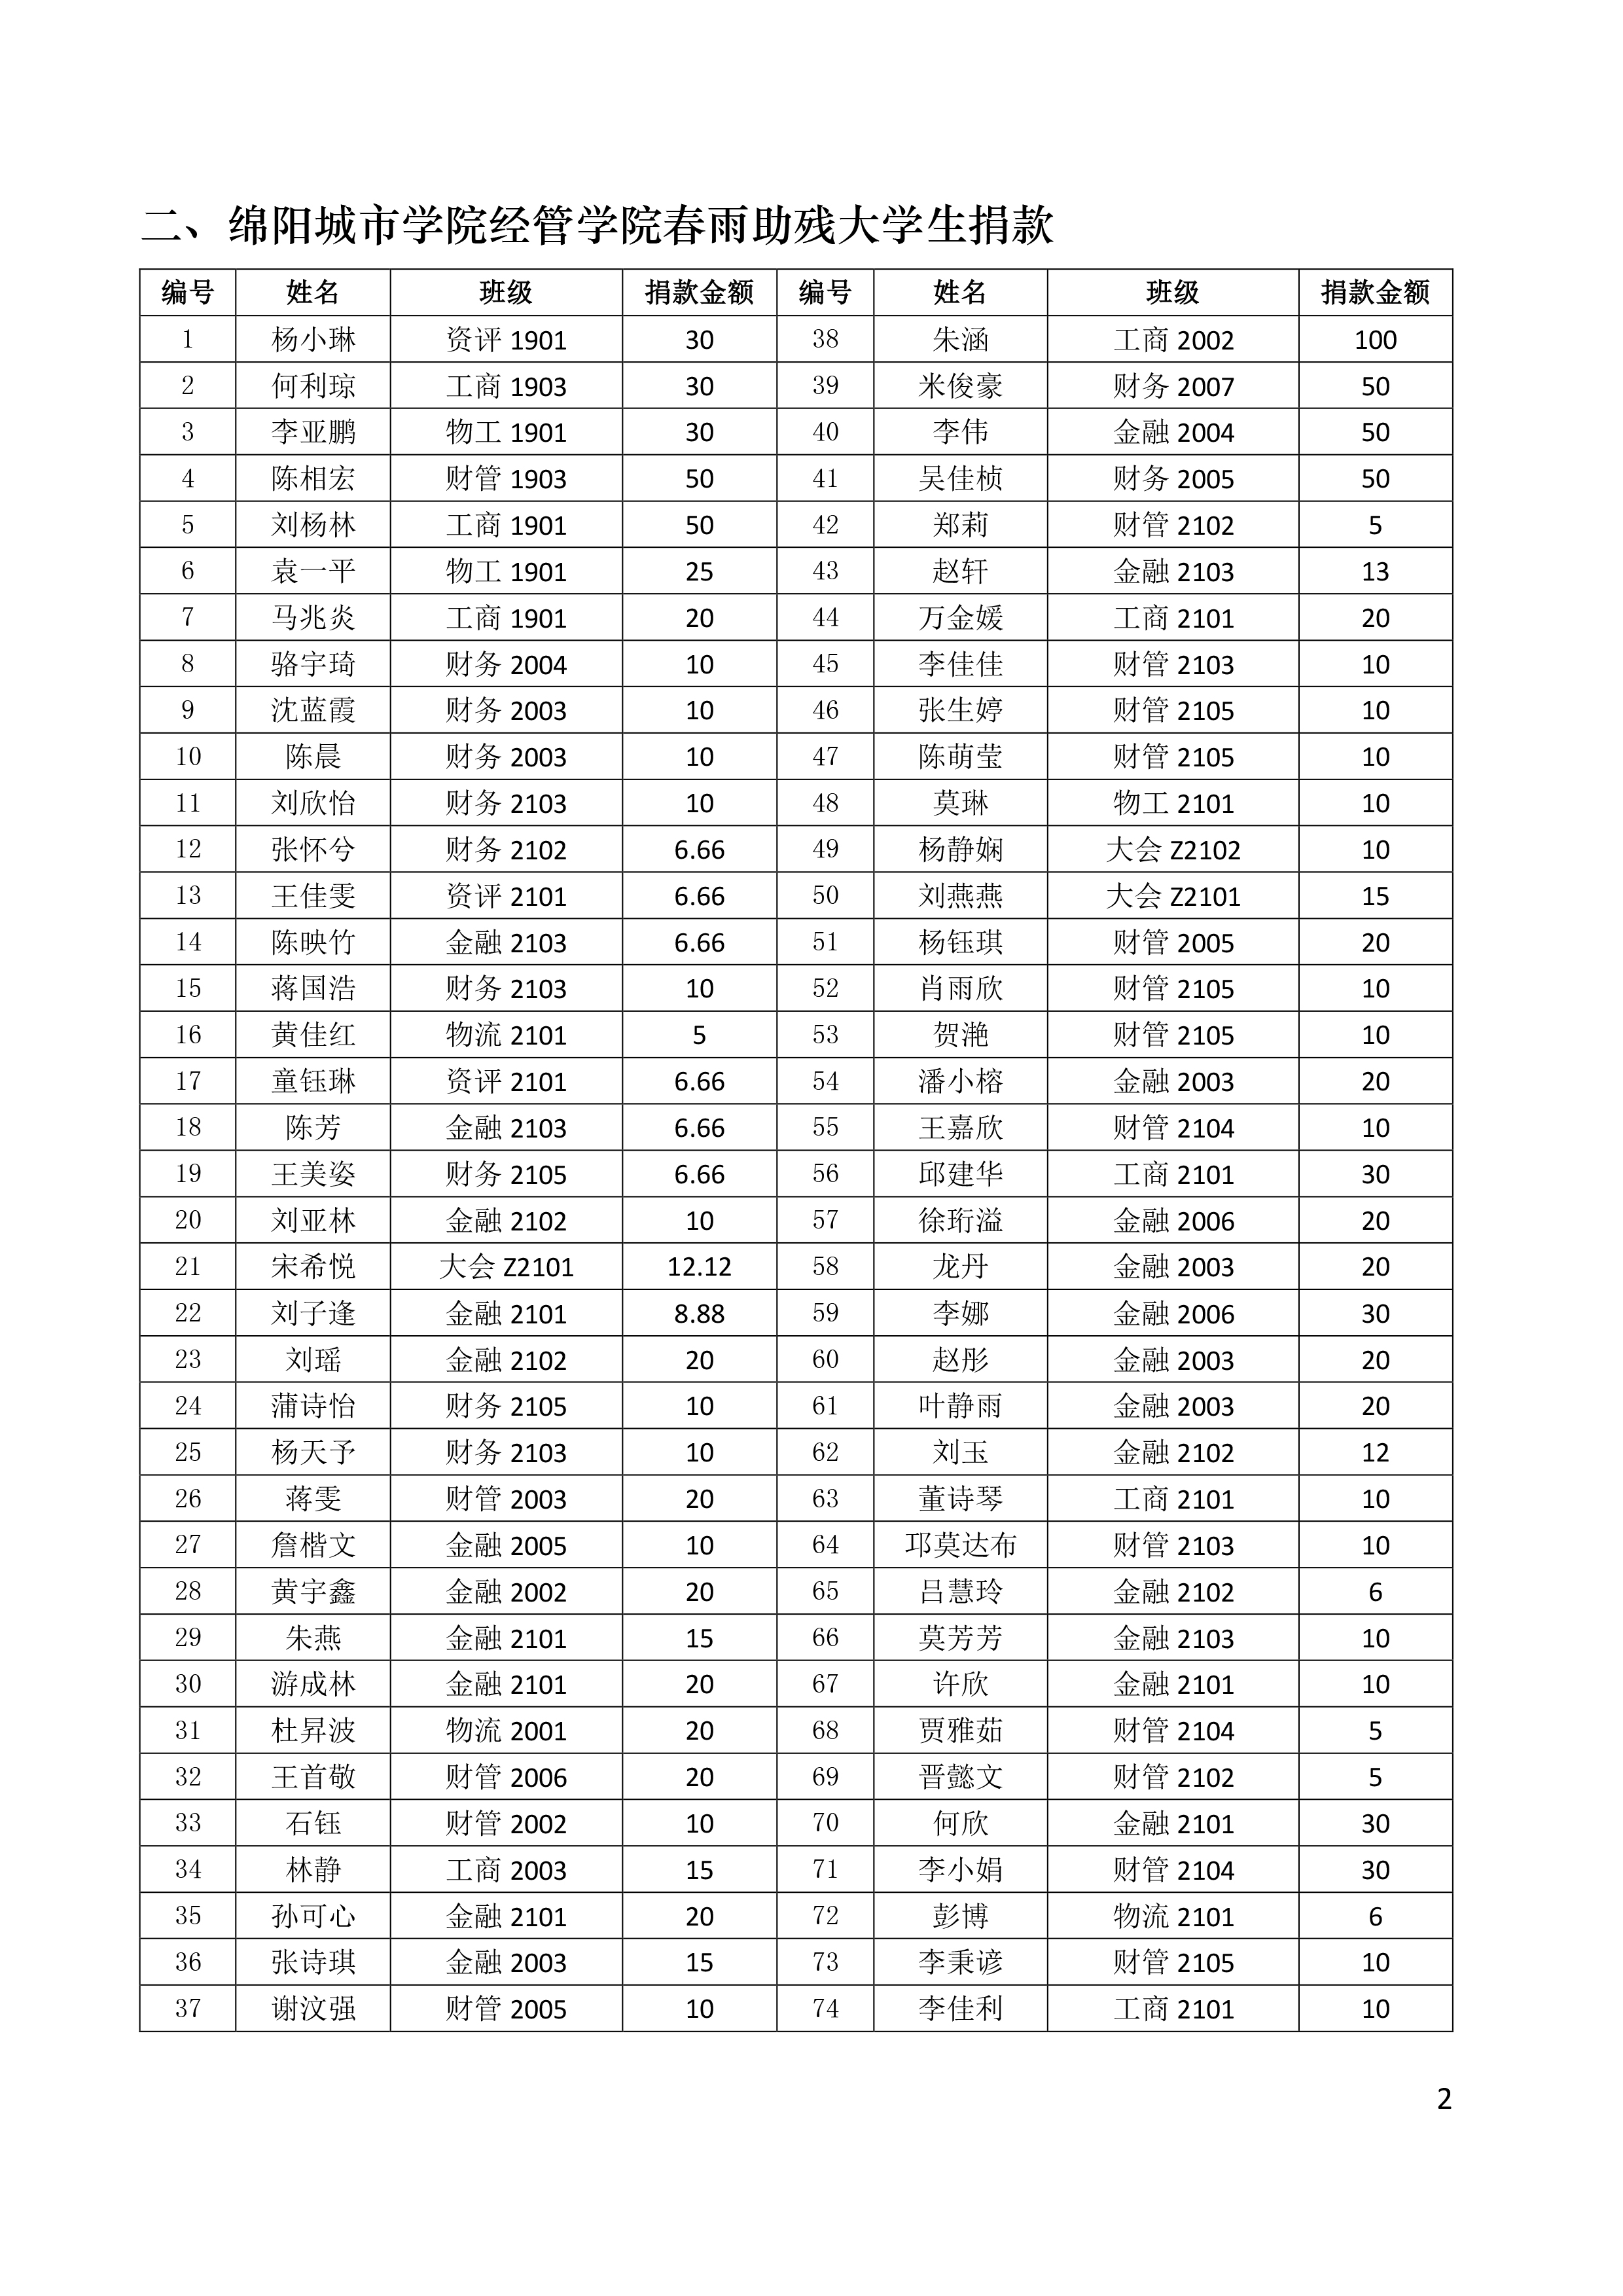 第020期-6月21日绵阳城市学院经管学院捐款9457.04元情况公示（名单）-2.jpg